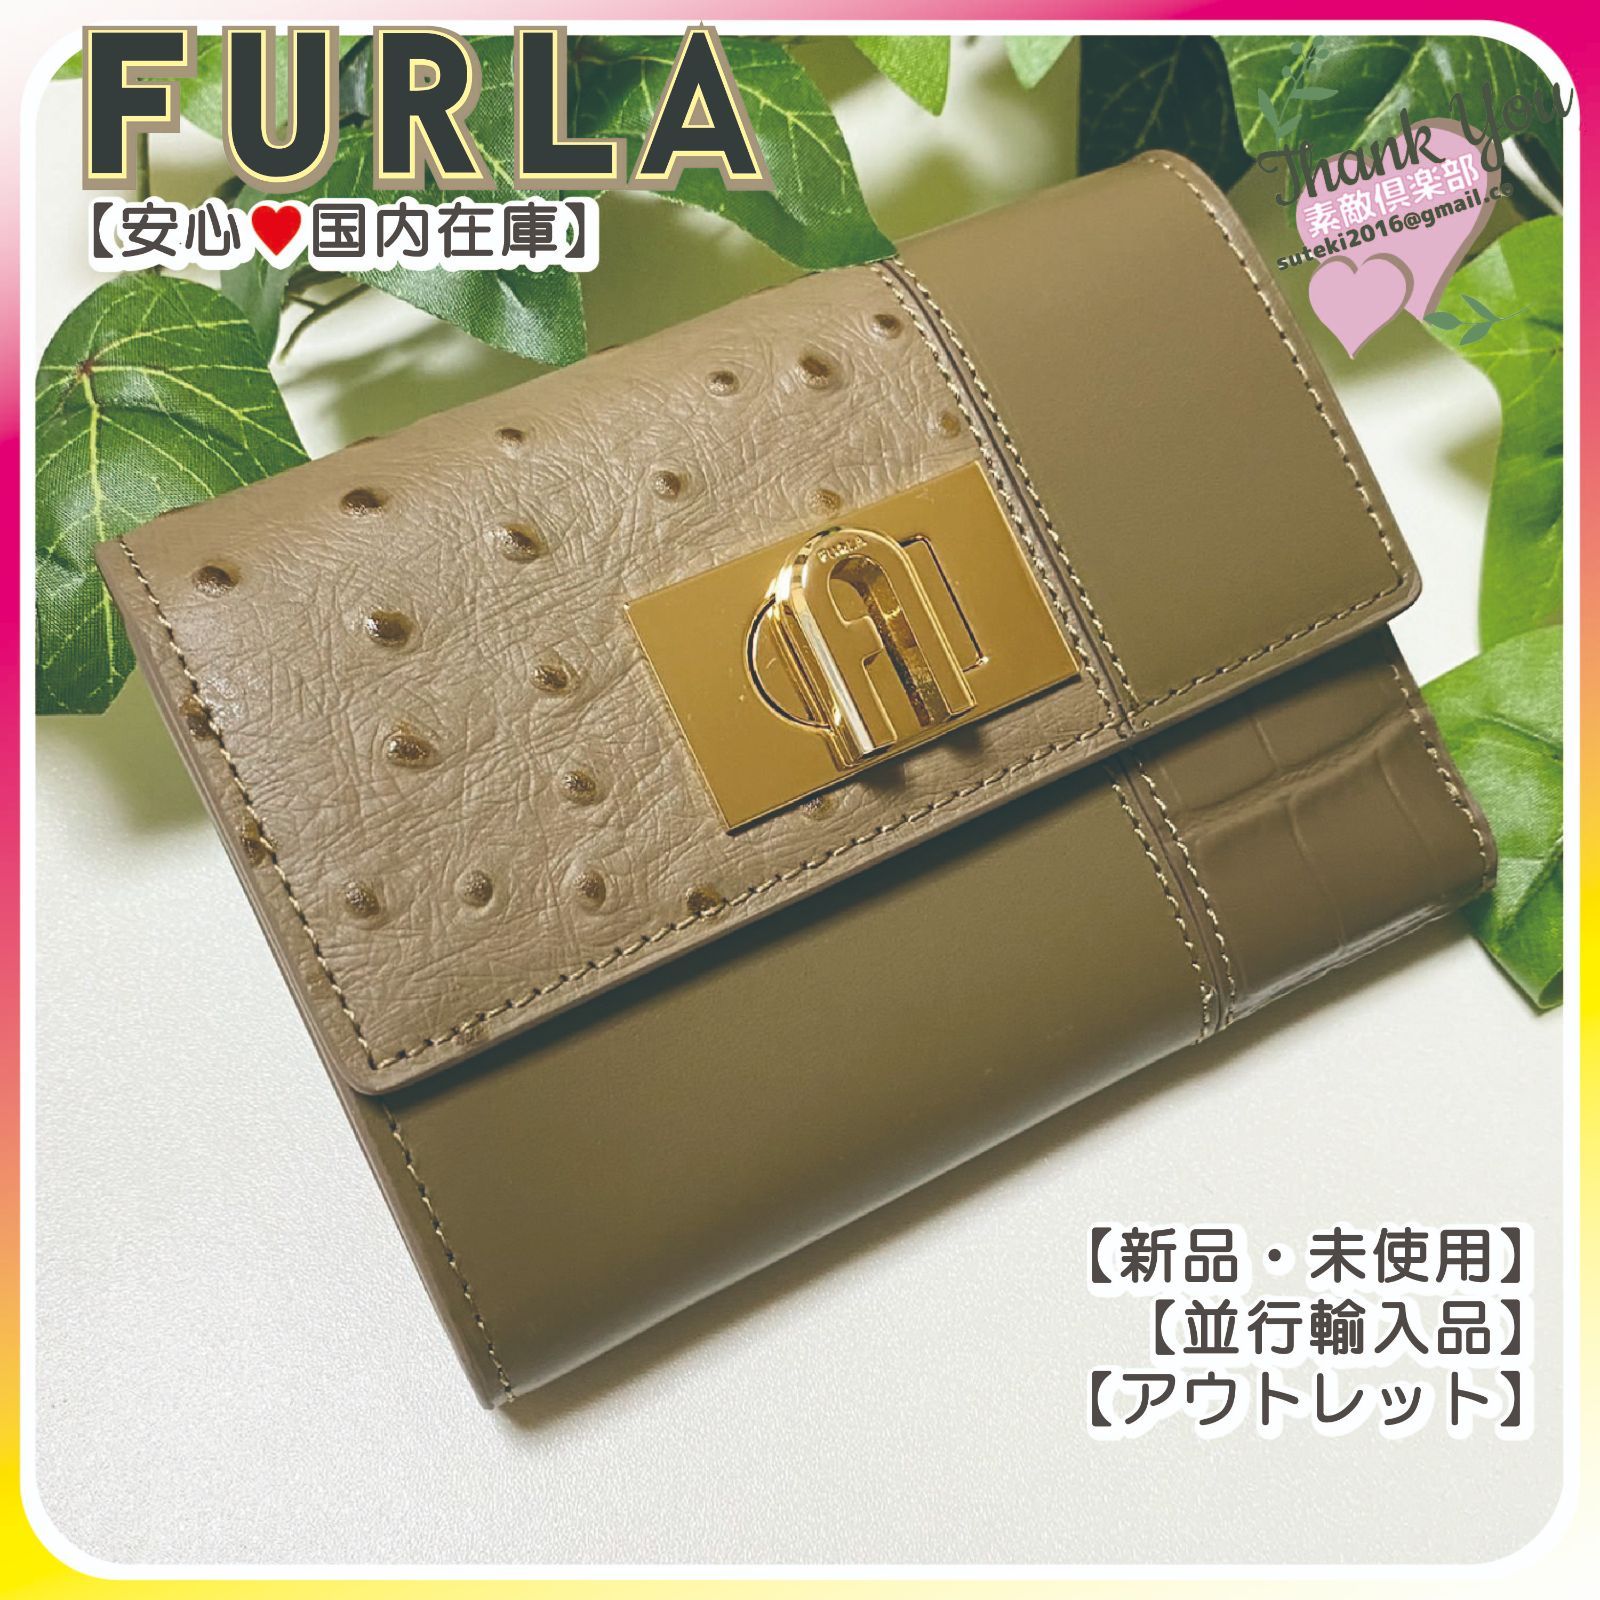 【新品・国内在庫】FURLA フルラ 三つ折り財布 カーキブラウン系